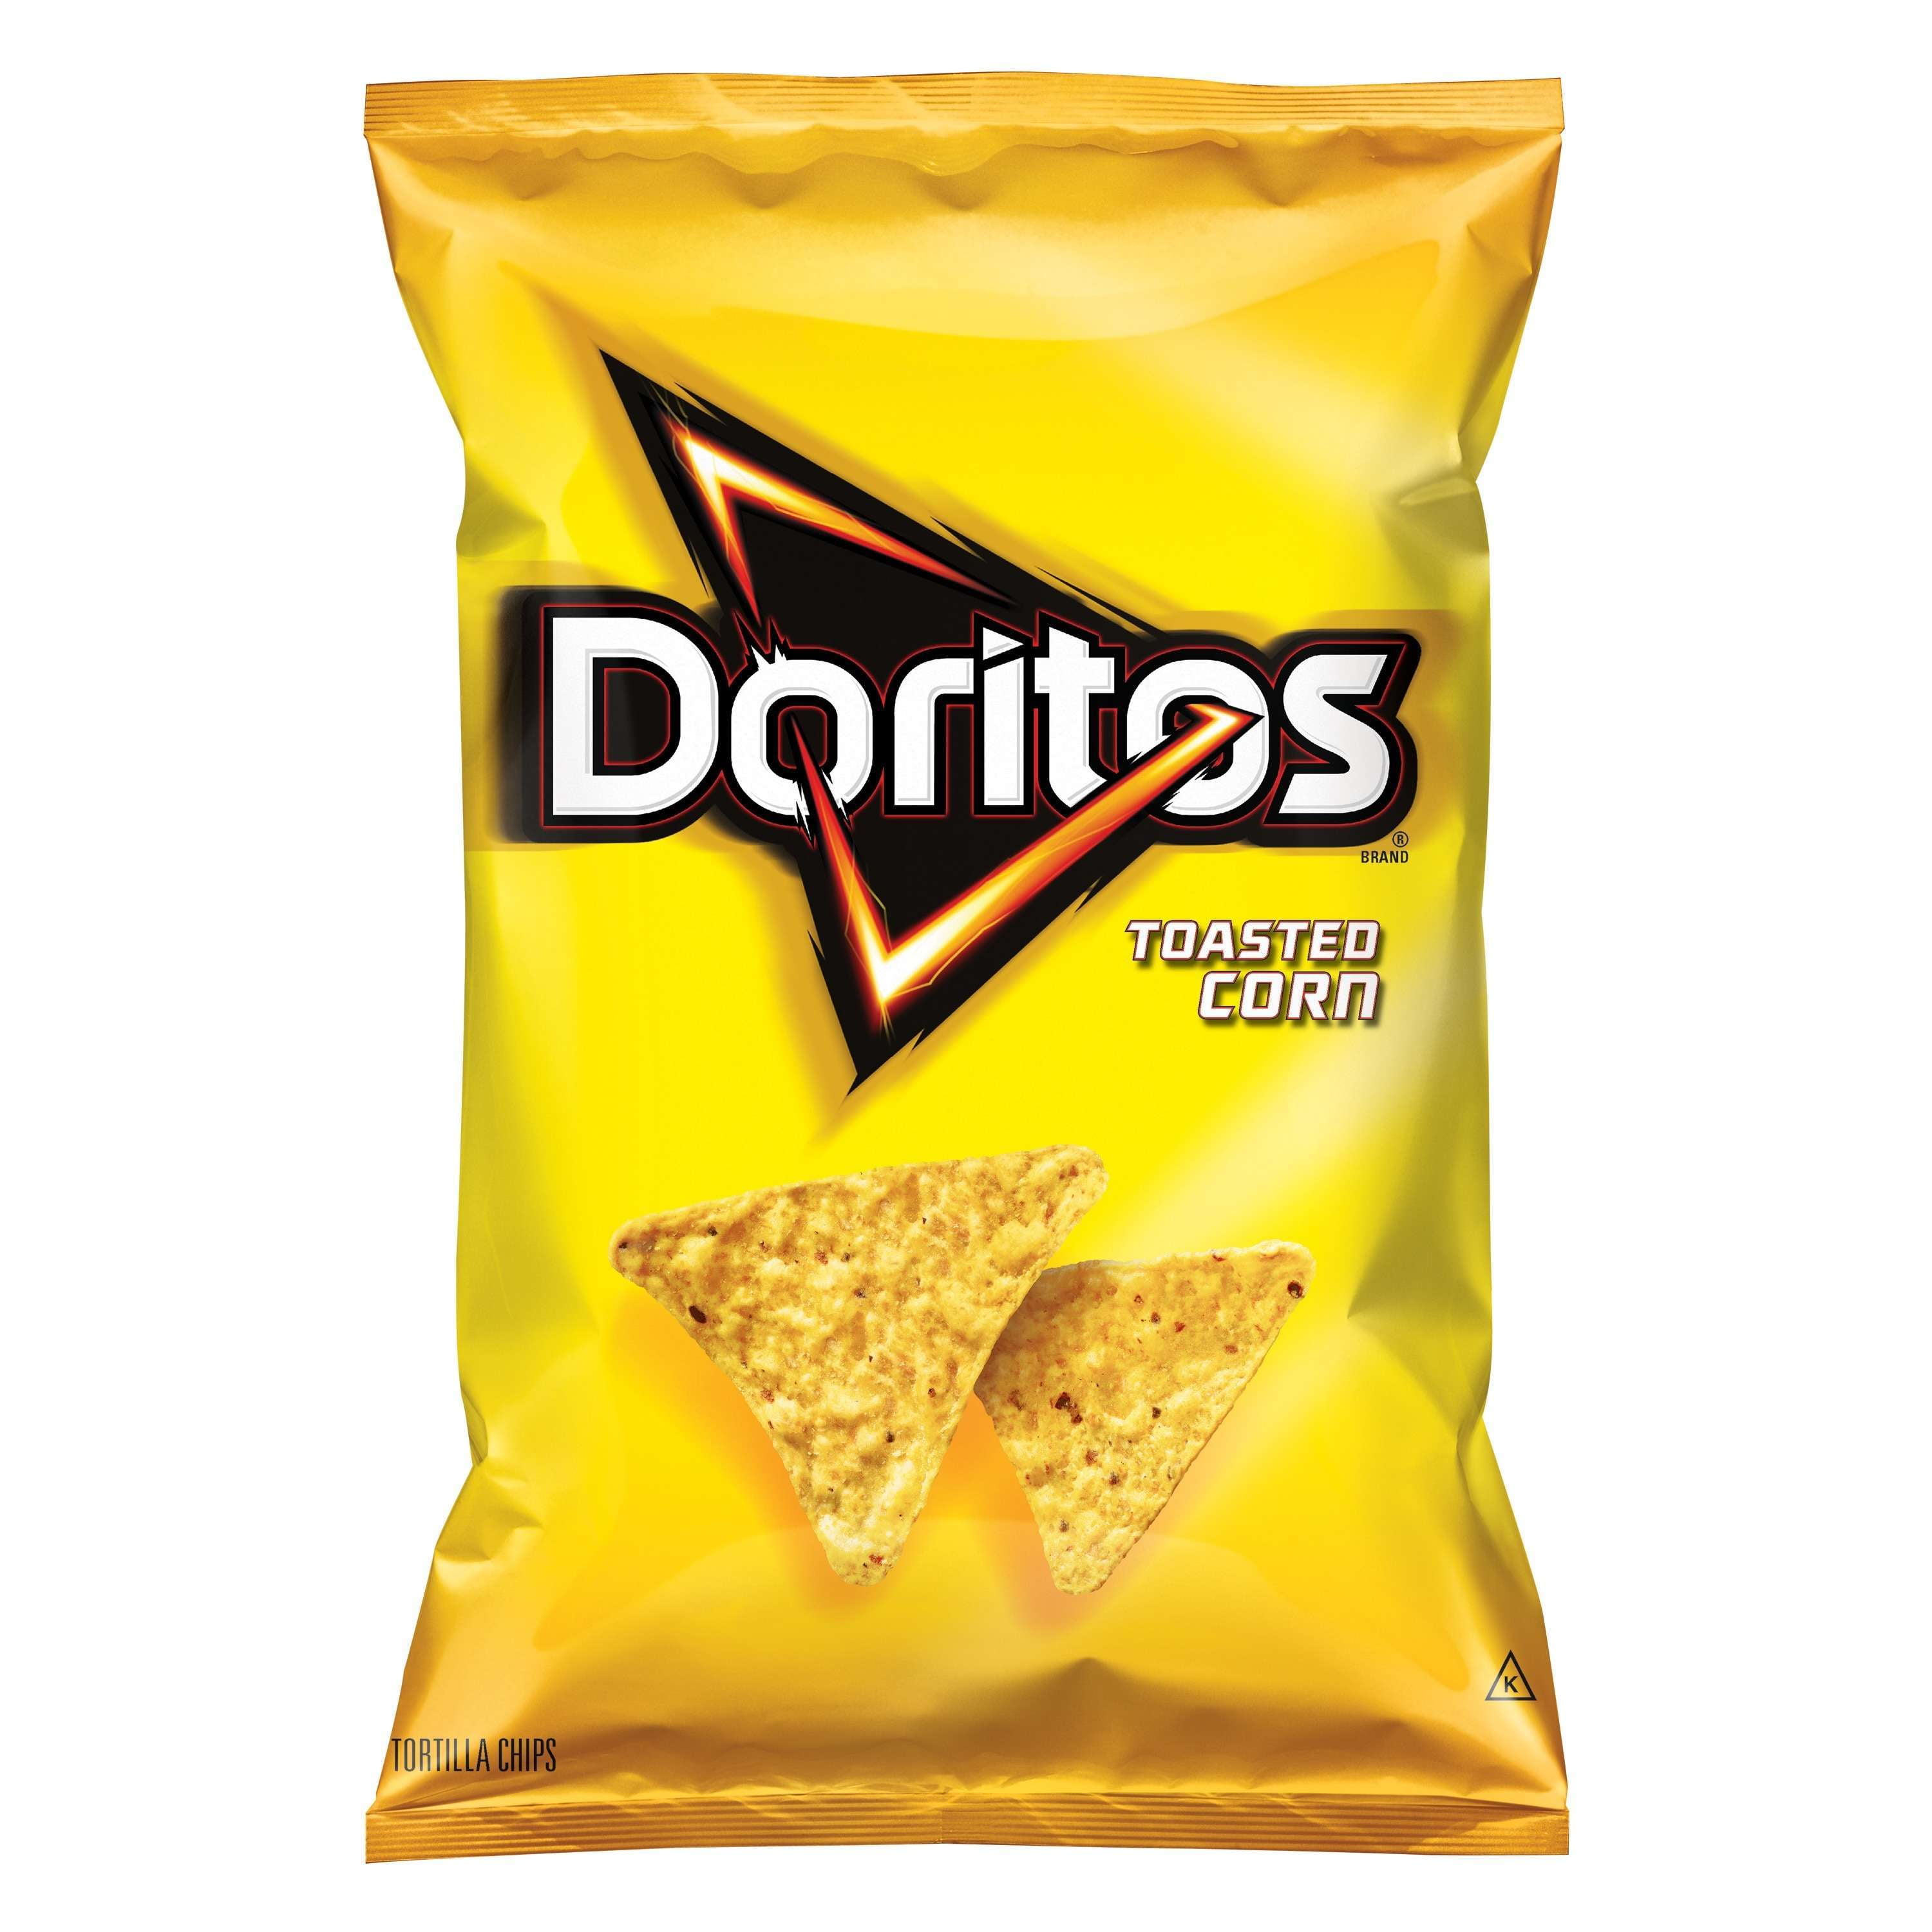 Doritos Toasted Corn Tortilla Chips, 10 Oz. - Walmart.com - Walmart.com